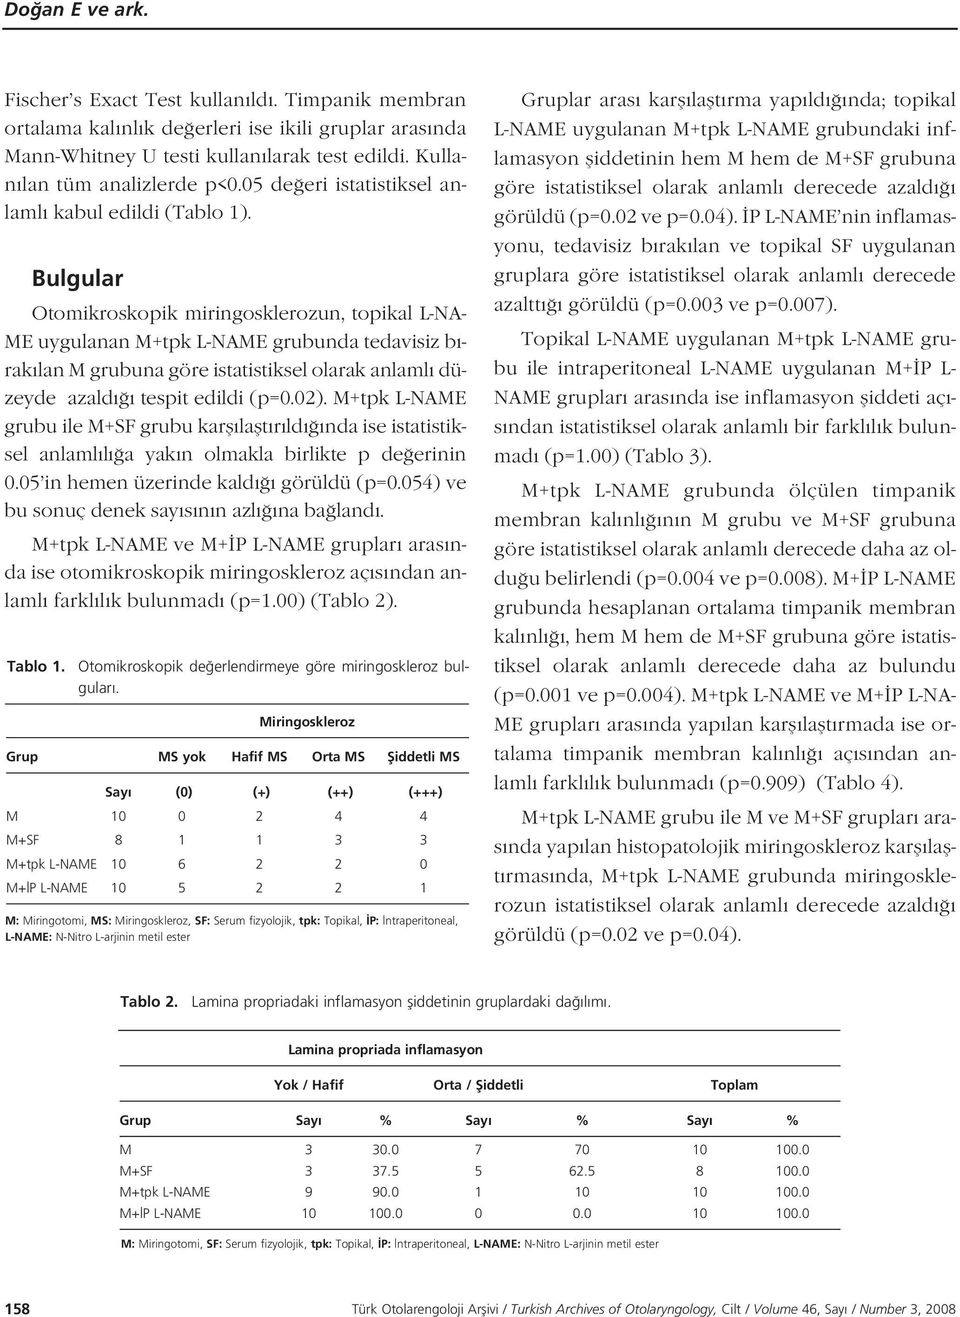 Bulgular Otomikroskopik miringosklerozun, topikal L-NA- ME uygulanan M+tpk L-NAME grubunda tedavisiz b - rak lan M grubuna göre istatistiksel olarak anlaml düzeyde azald tespit edildi (p=0.02).